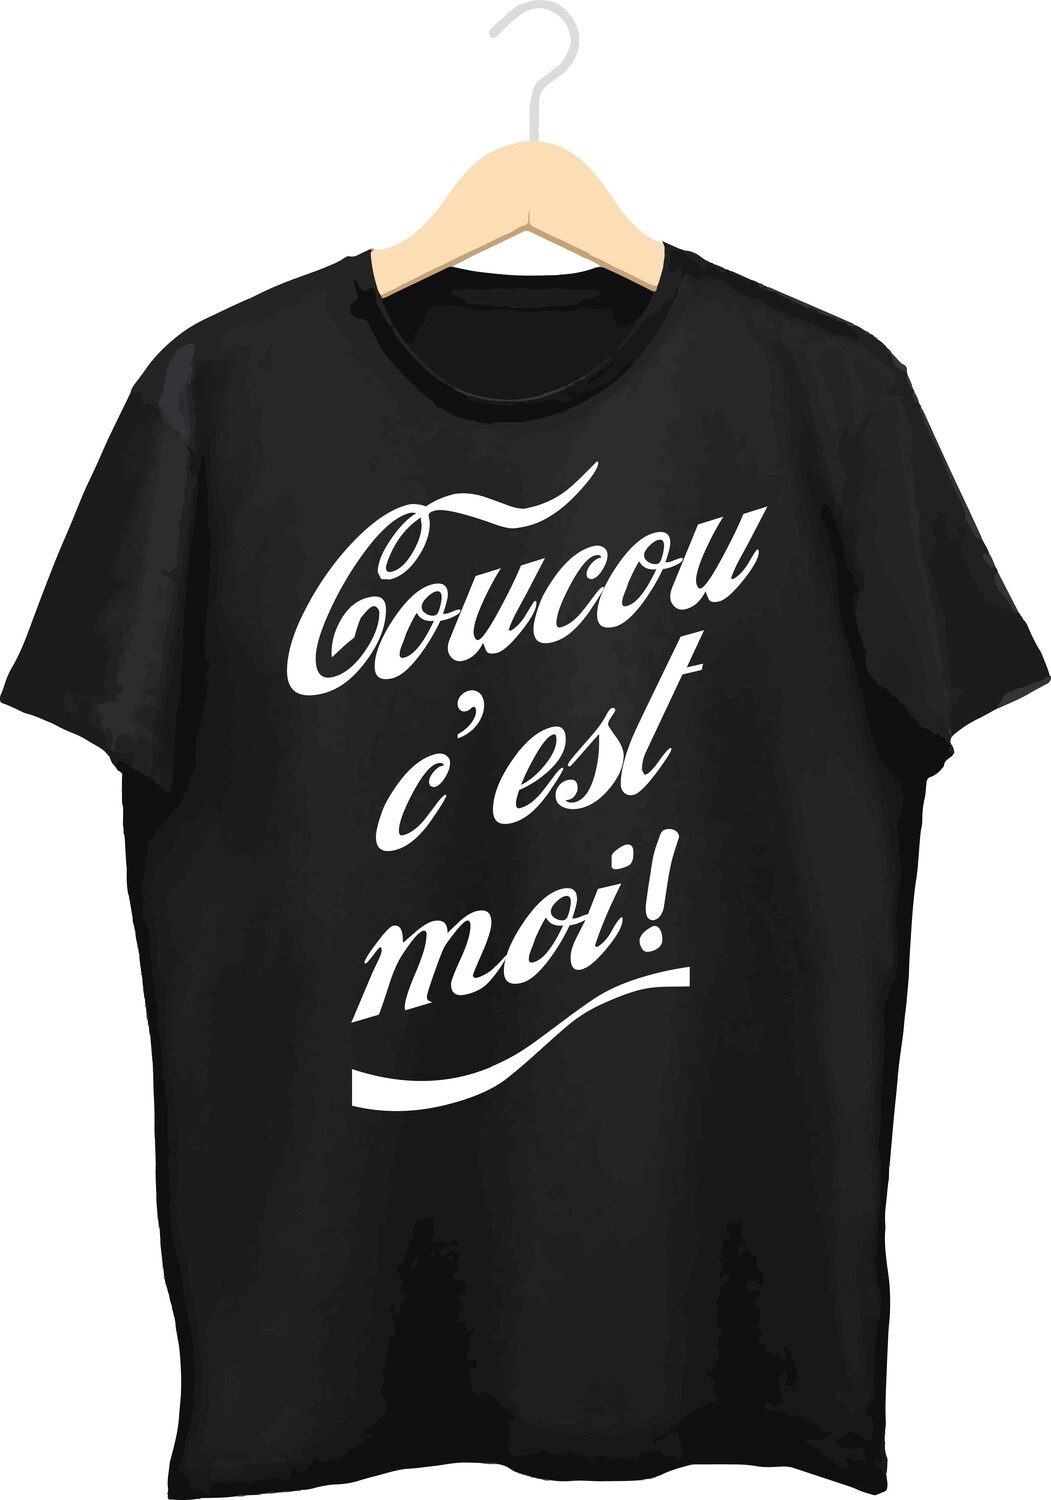 T-shirt met bedrukking (Coucou)